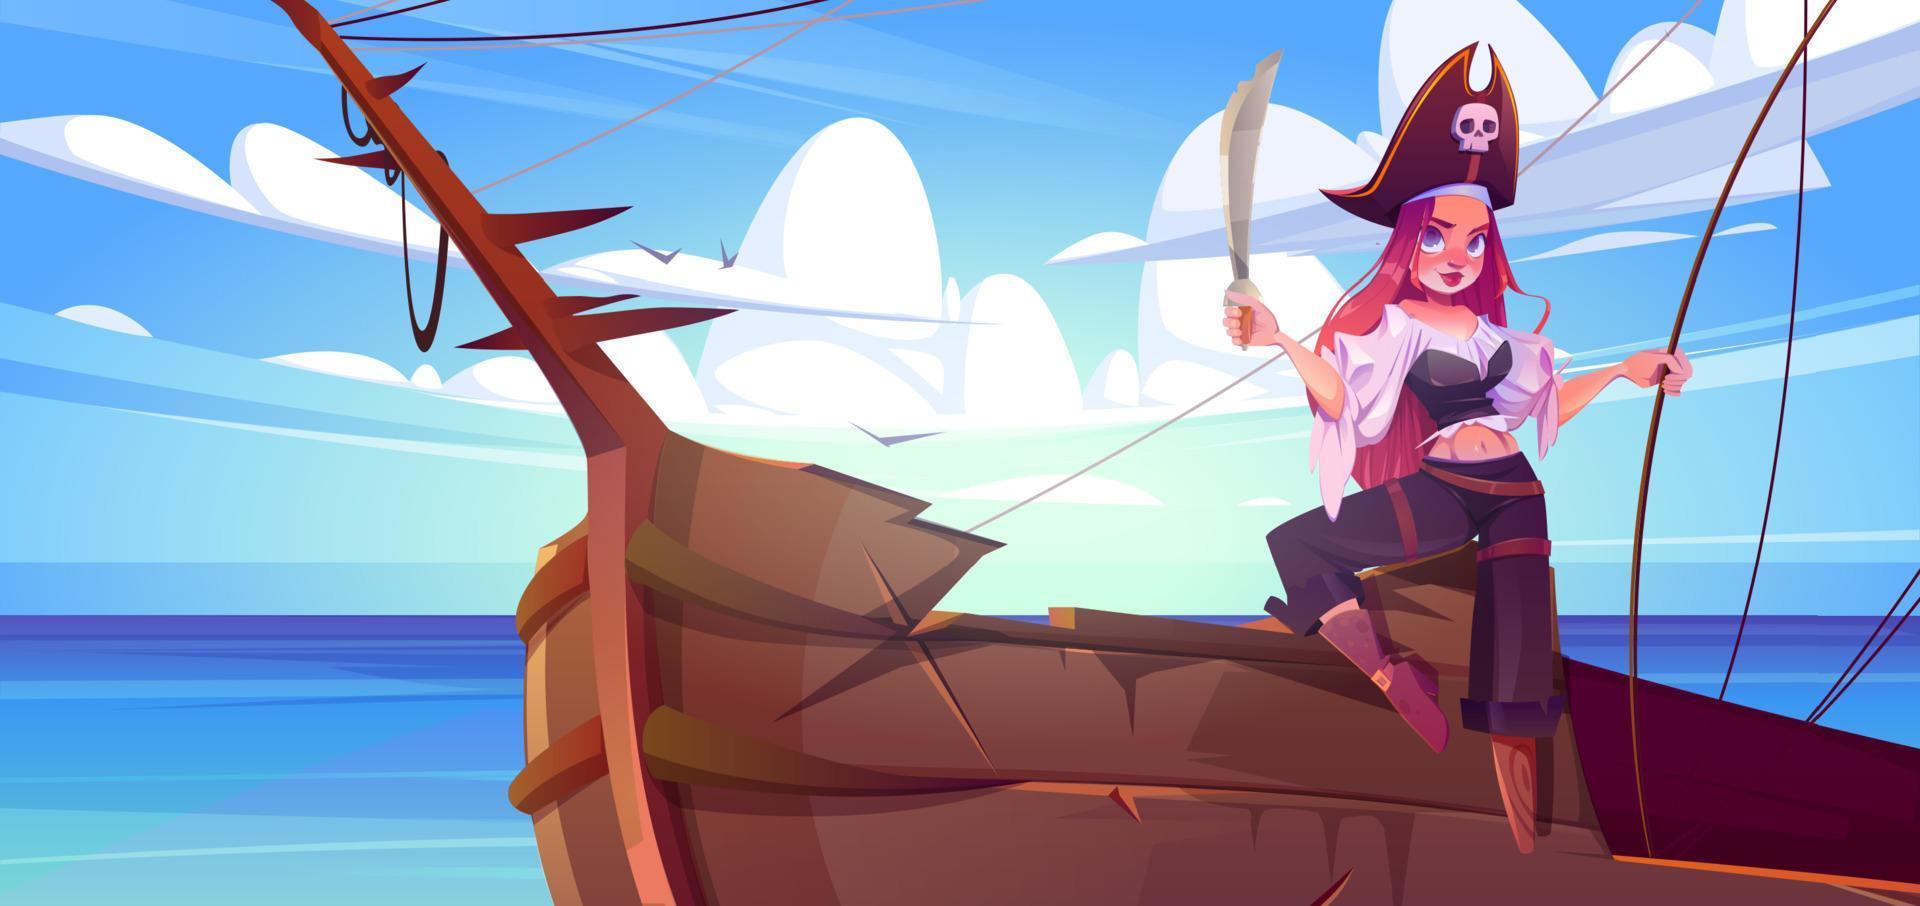 flicka pirat med svärd på fartyg däck vektor